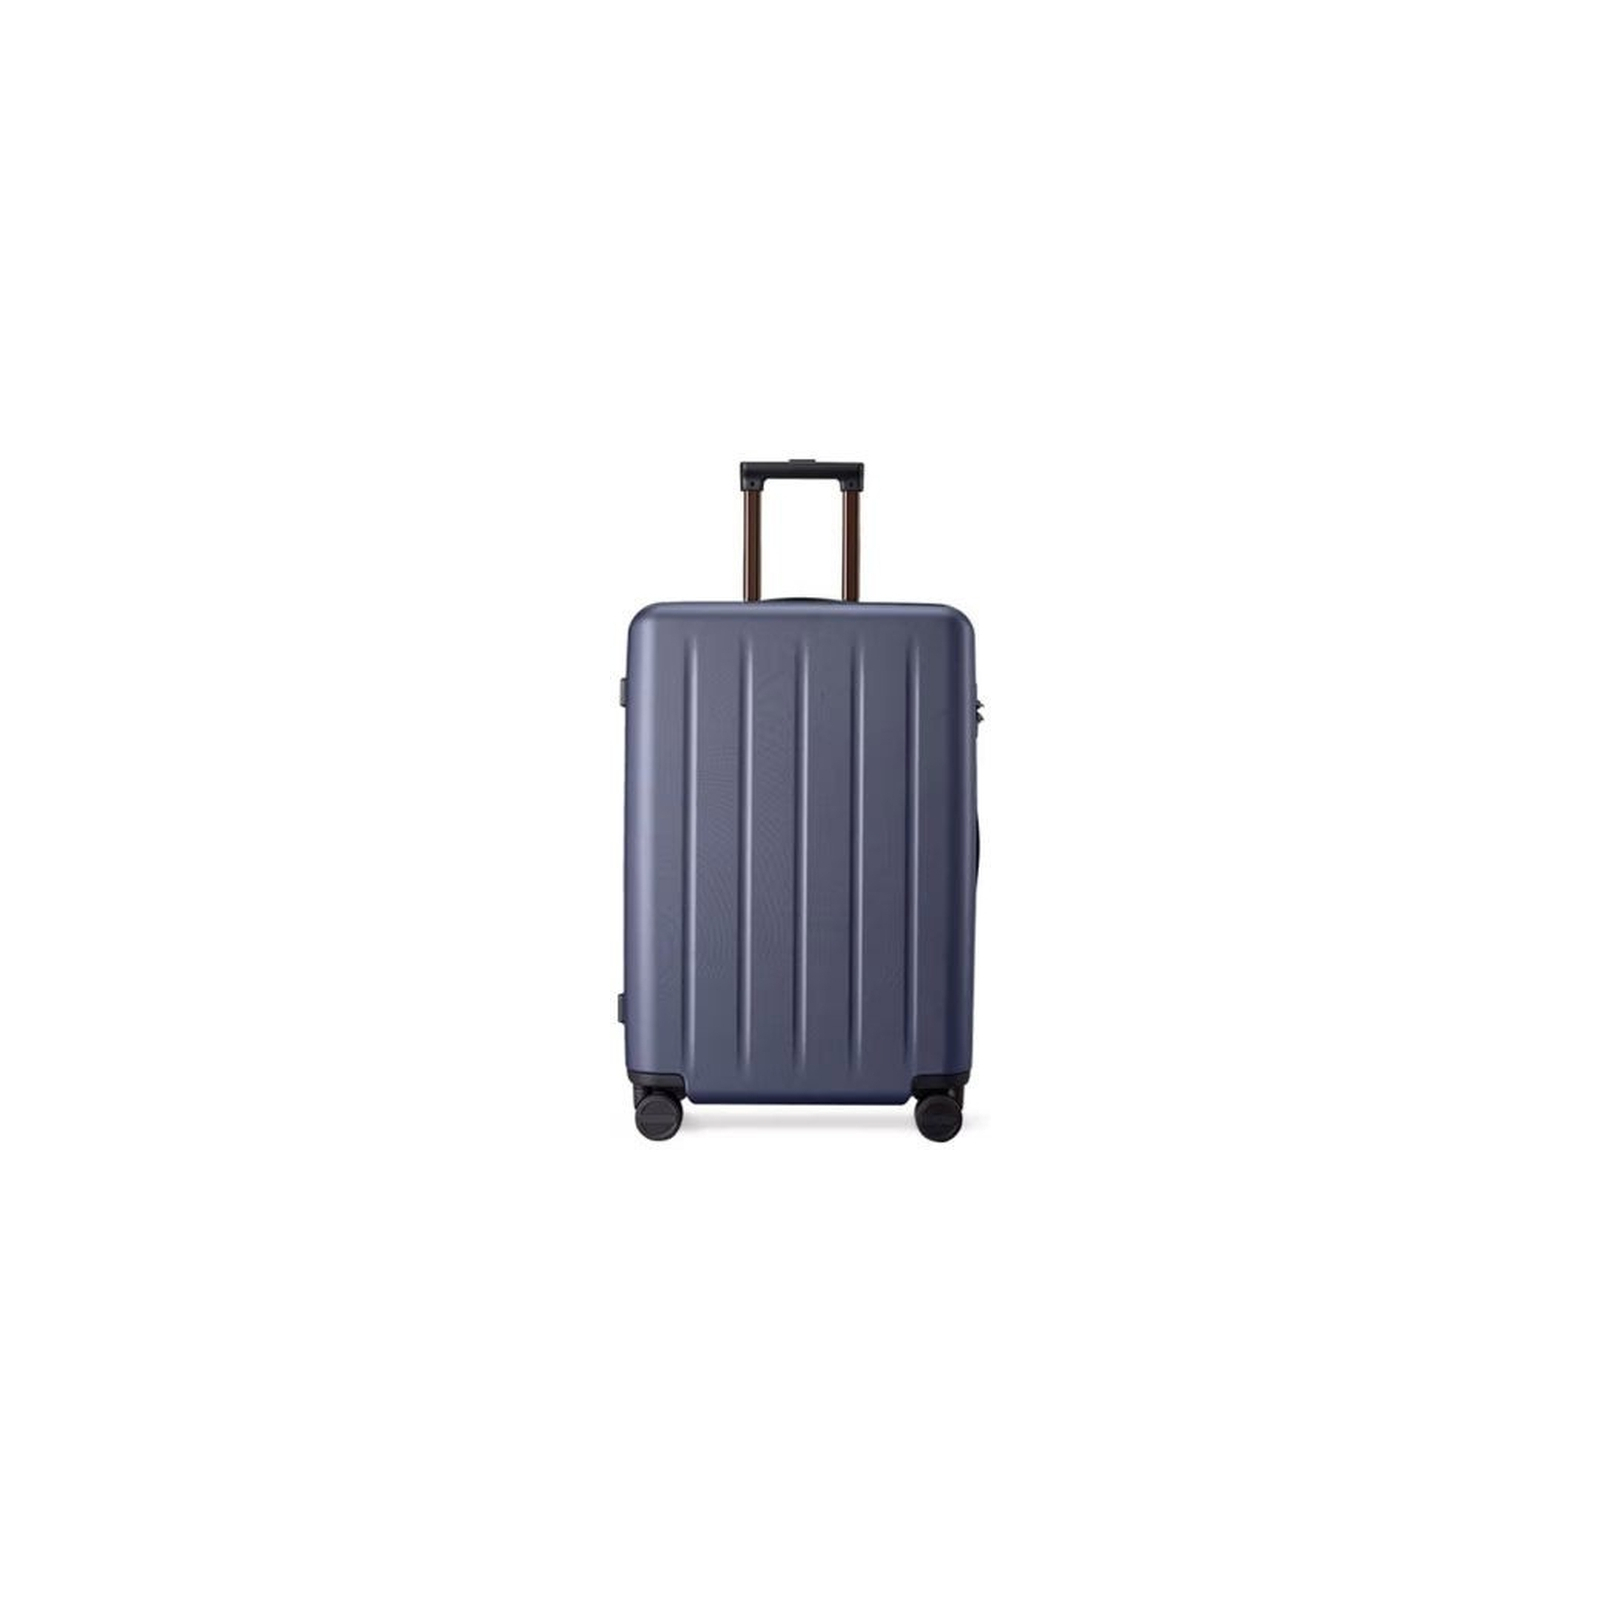 Чемодан Xiaomi Ninetygo PC Luggage 28'' Black (6970055341066) изображение 2